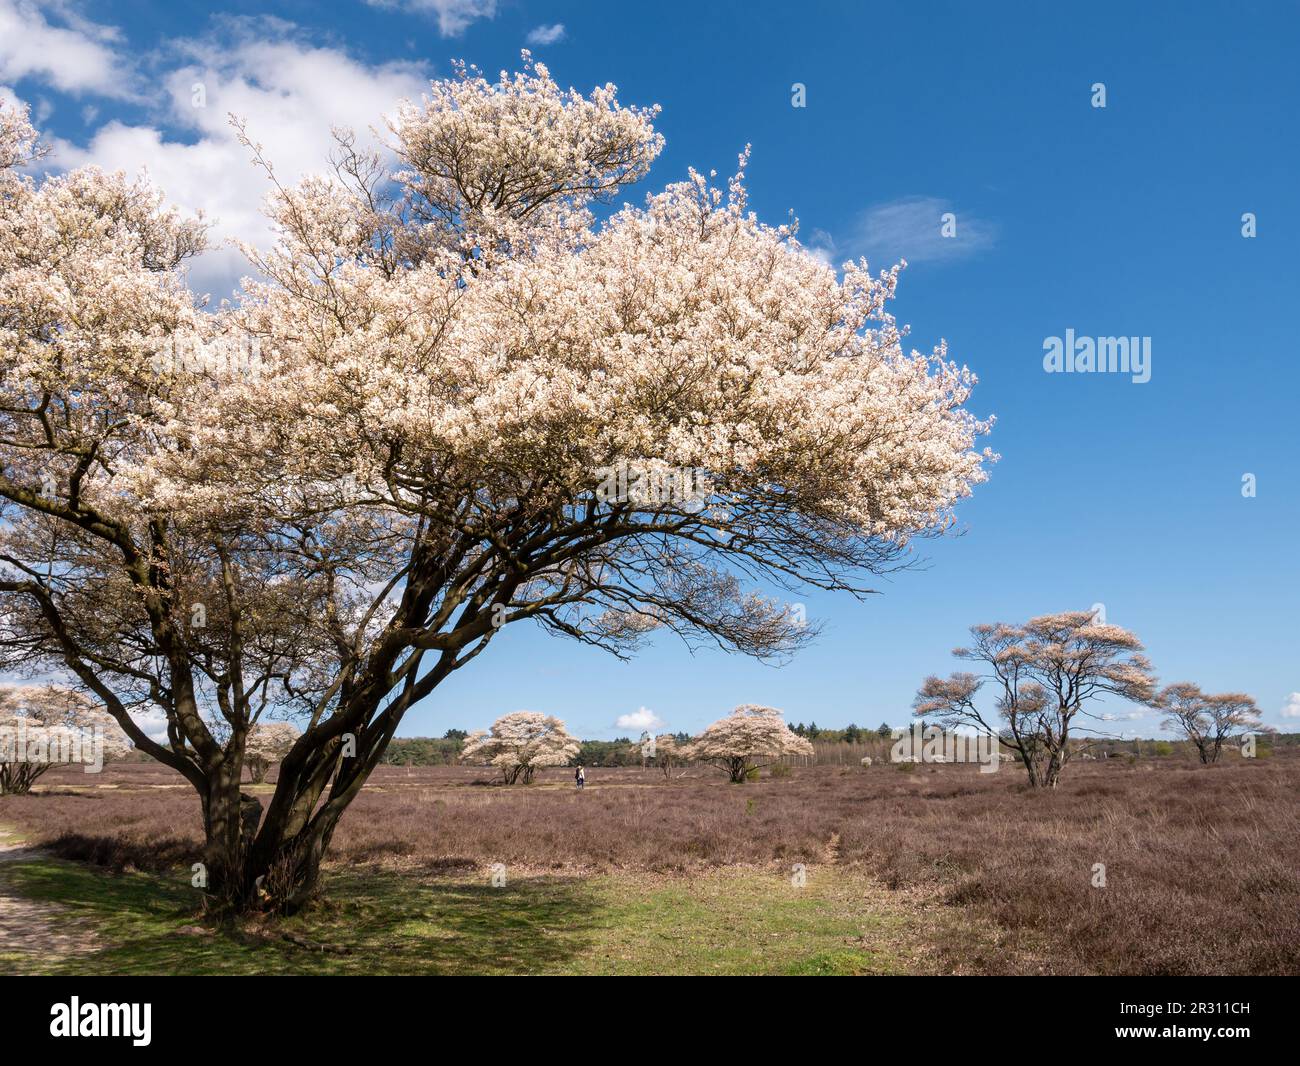 Verschneite mespilus- oder Juneberry-Bäume, Amelanchier lamarkii, blühen im Naturschutzgebiet Zuiderheide, Nordholland, Niederlande Stockfoto